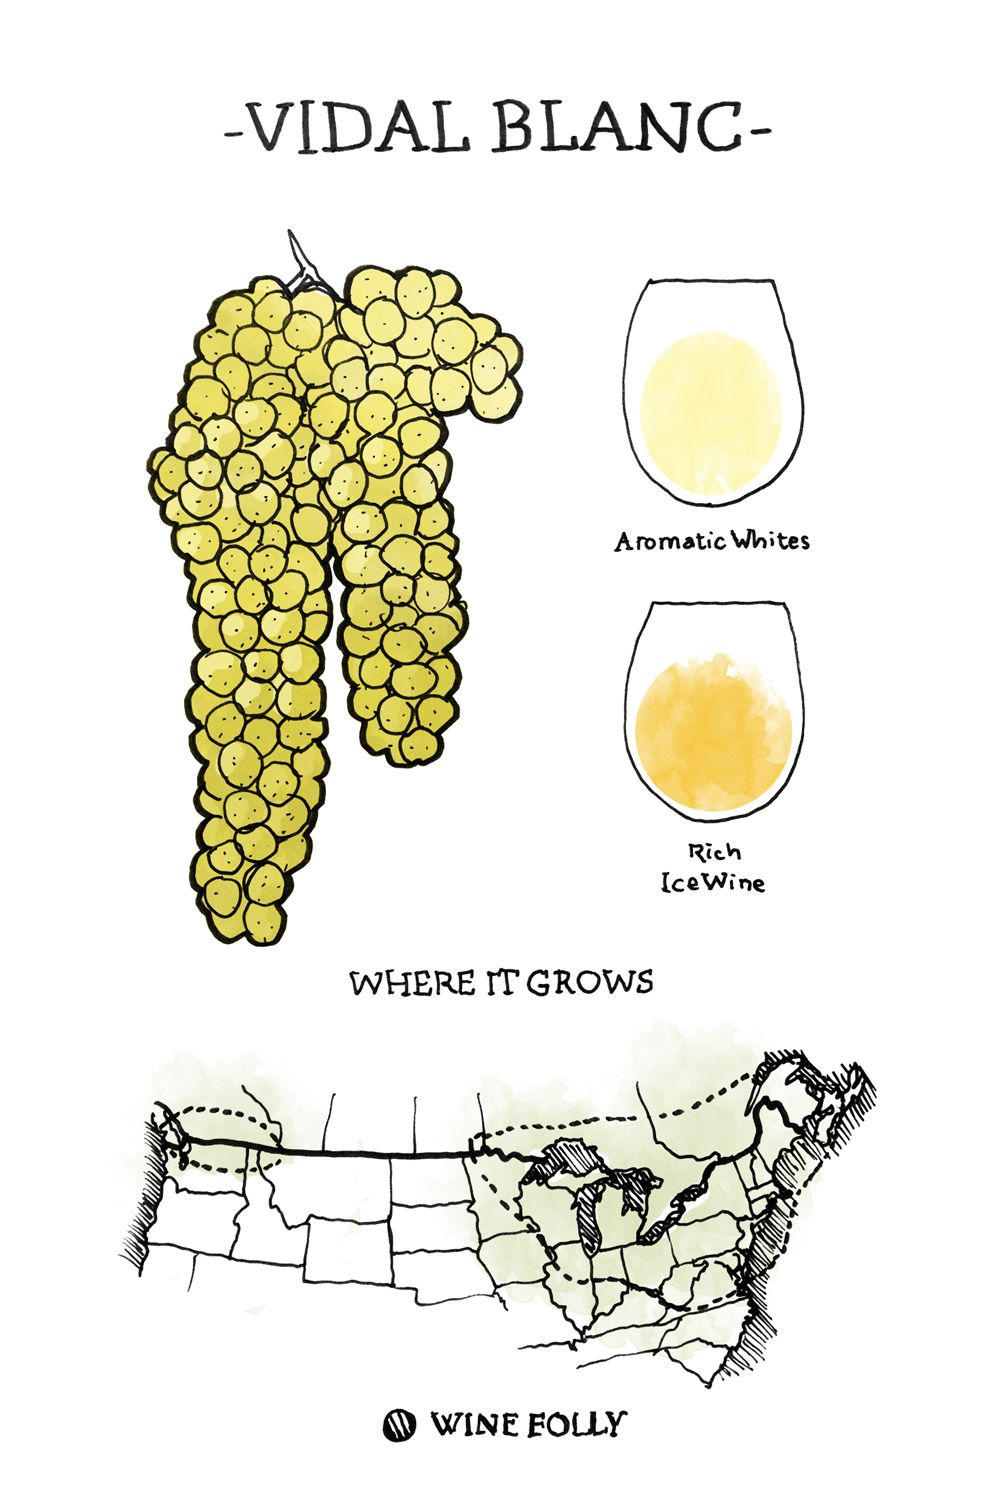 Vidal-blanc Wine Grape Illustration et carte régionale par Wine Folly